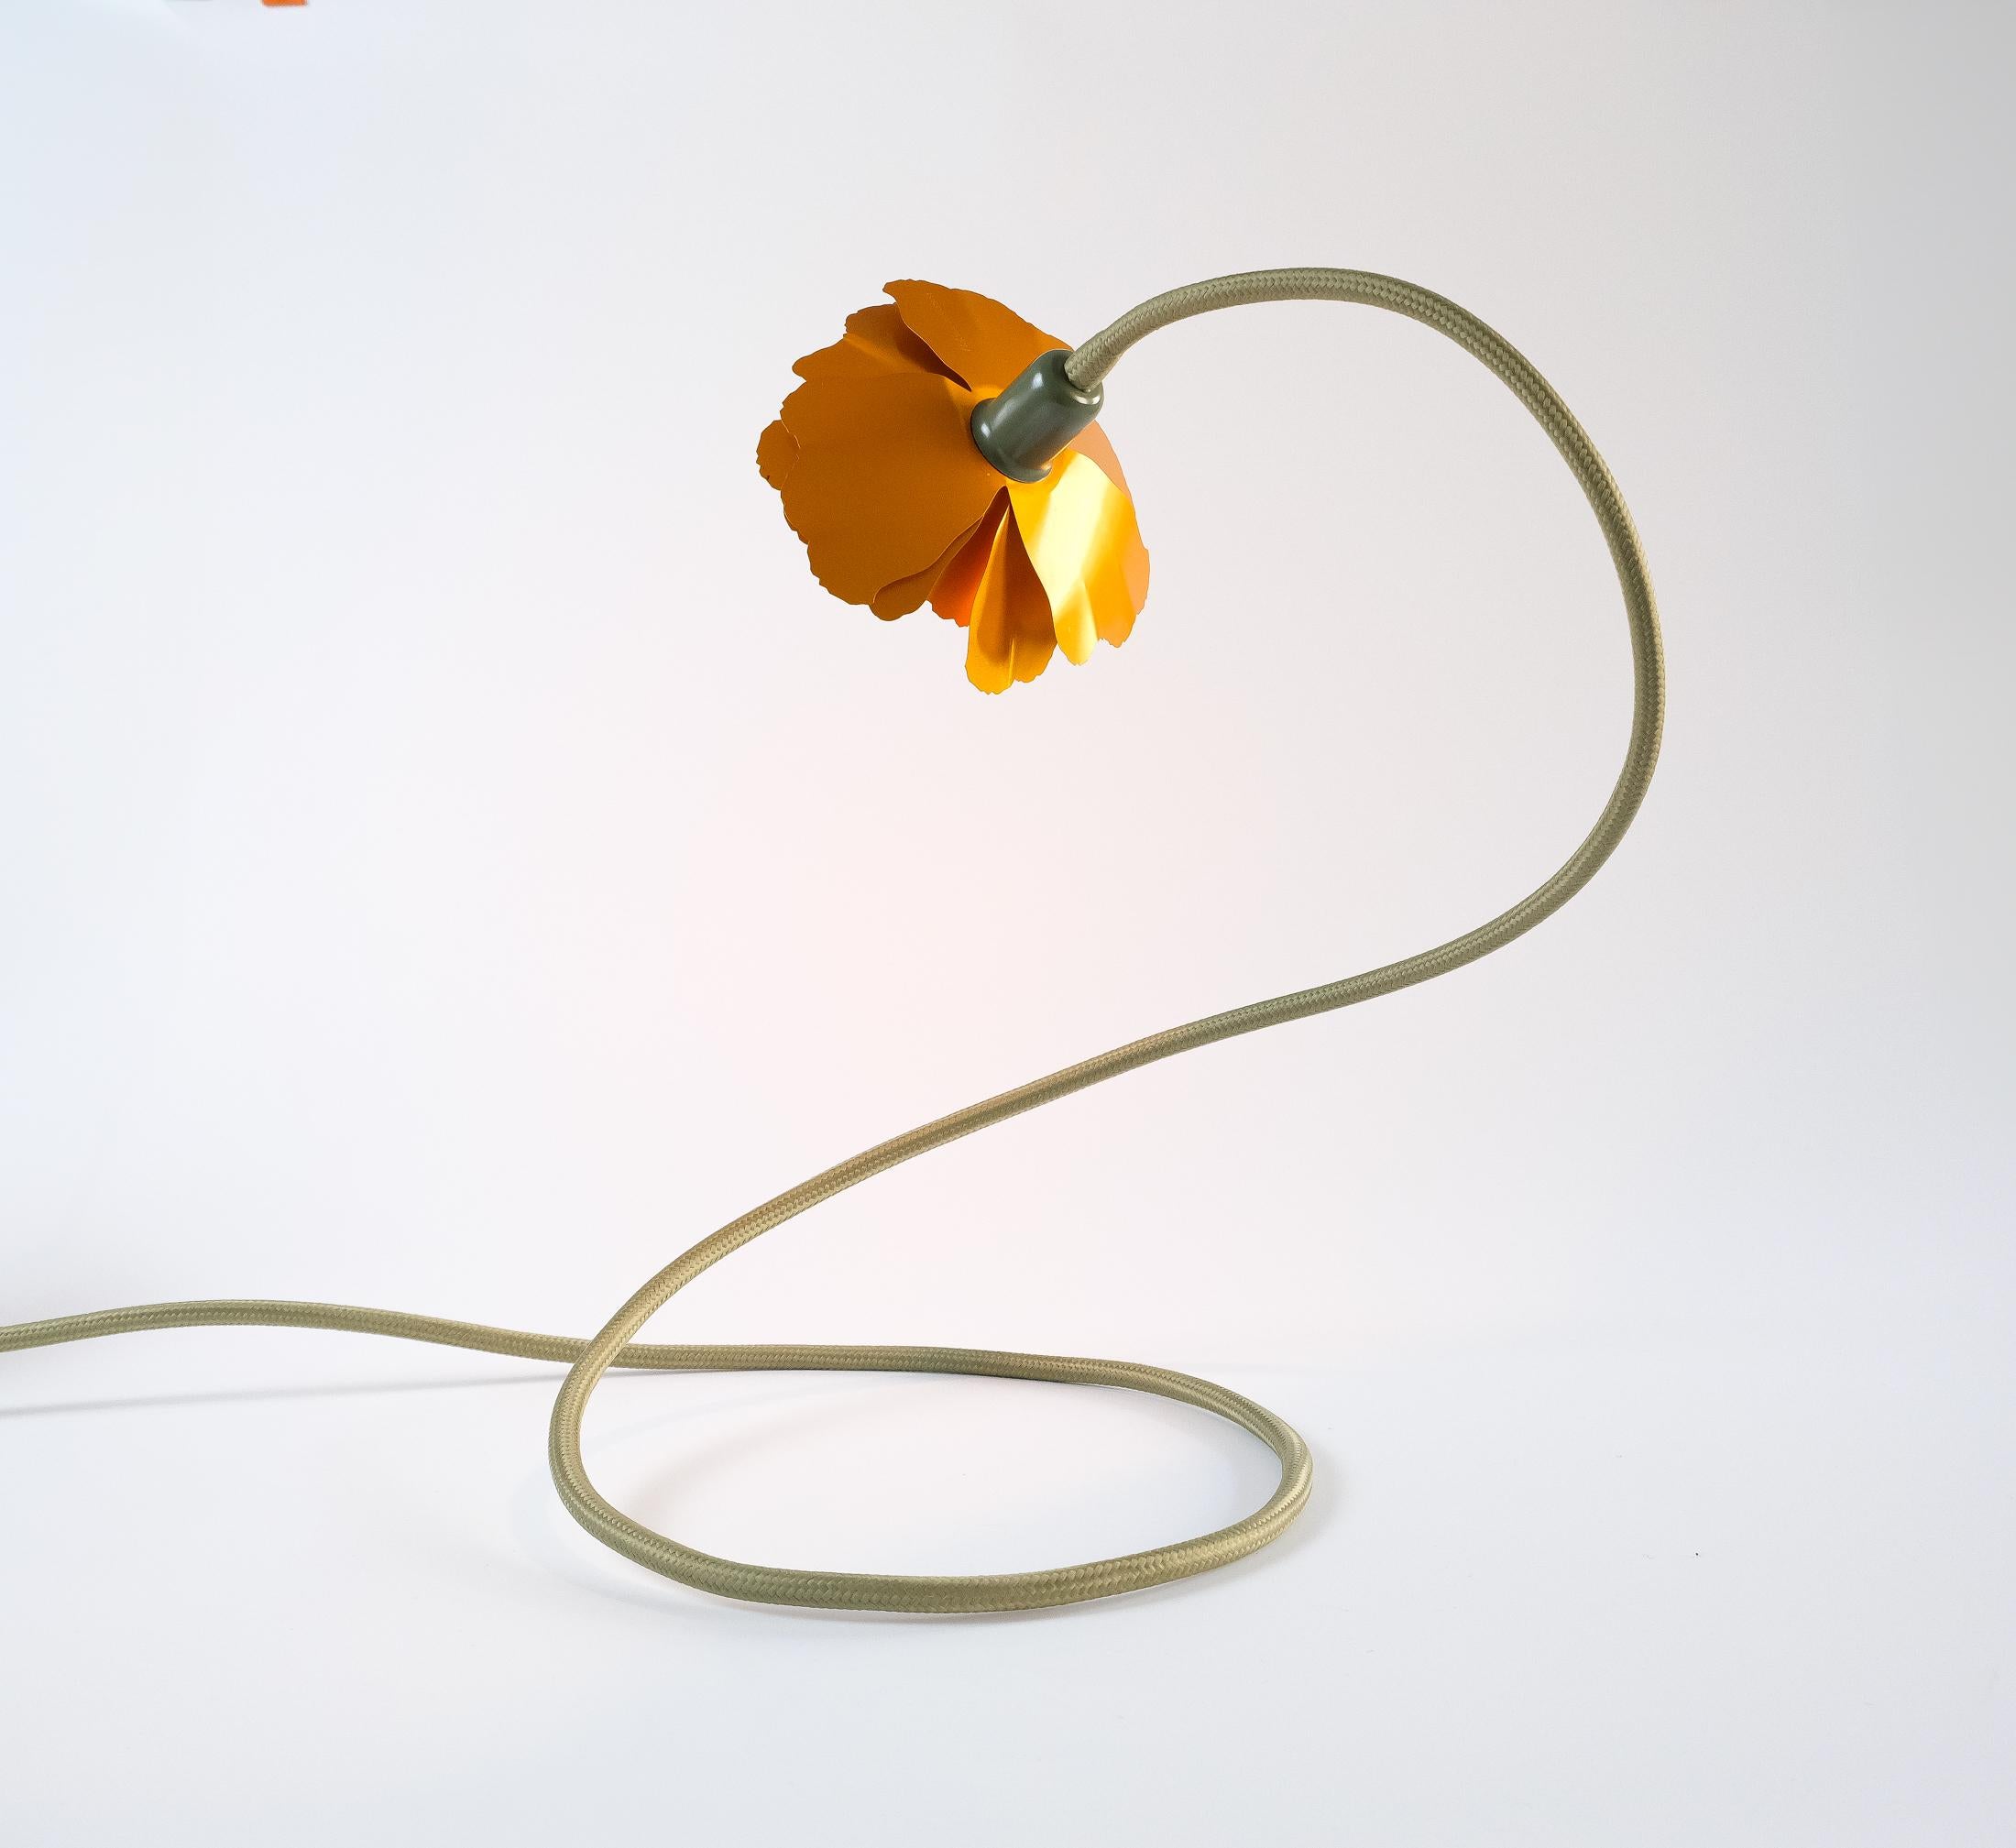 Helena Christensen's Flexible Flower Lamp for Habitat “V.I.P” Collection, 2004 For Sale 6